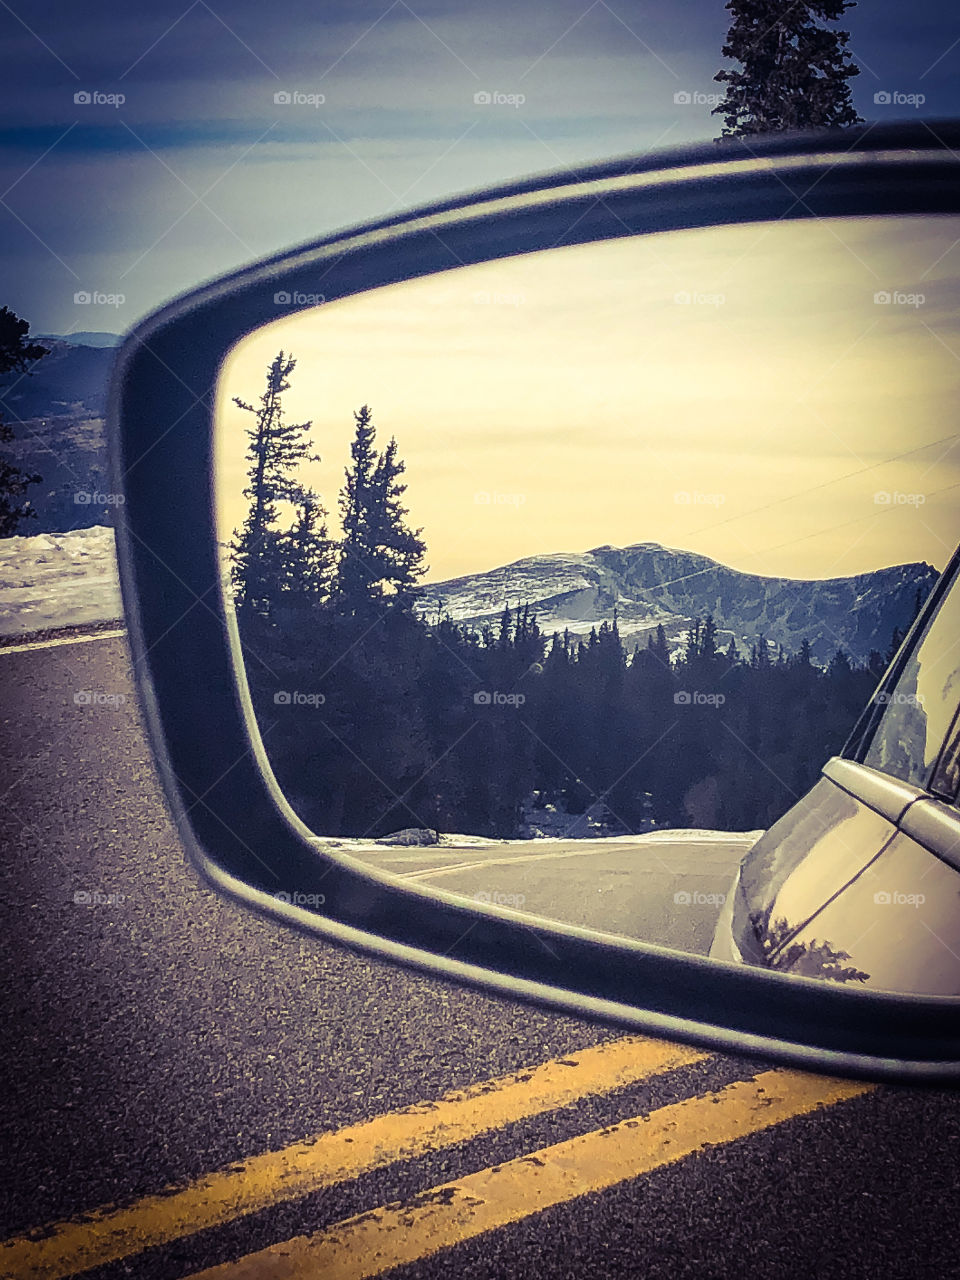 colorado mountain view in mirror